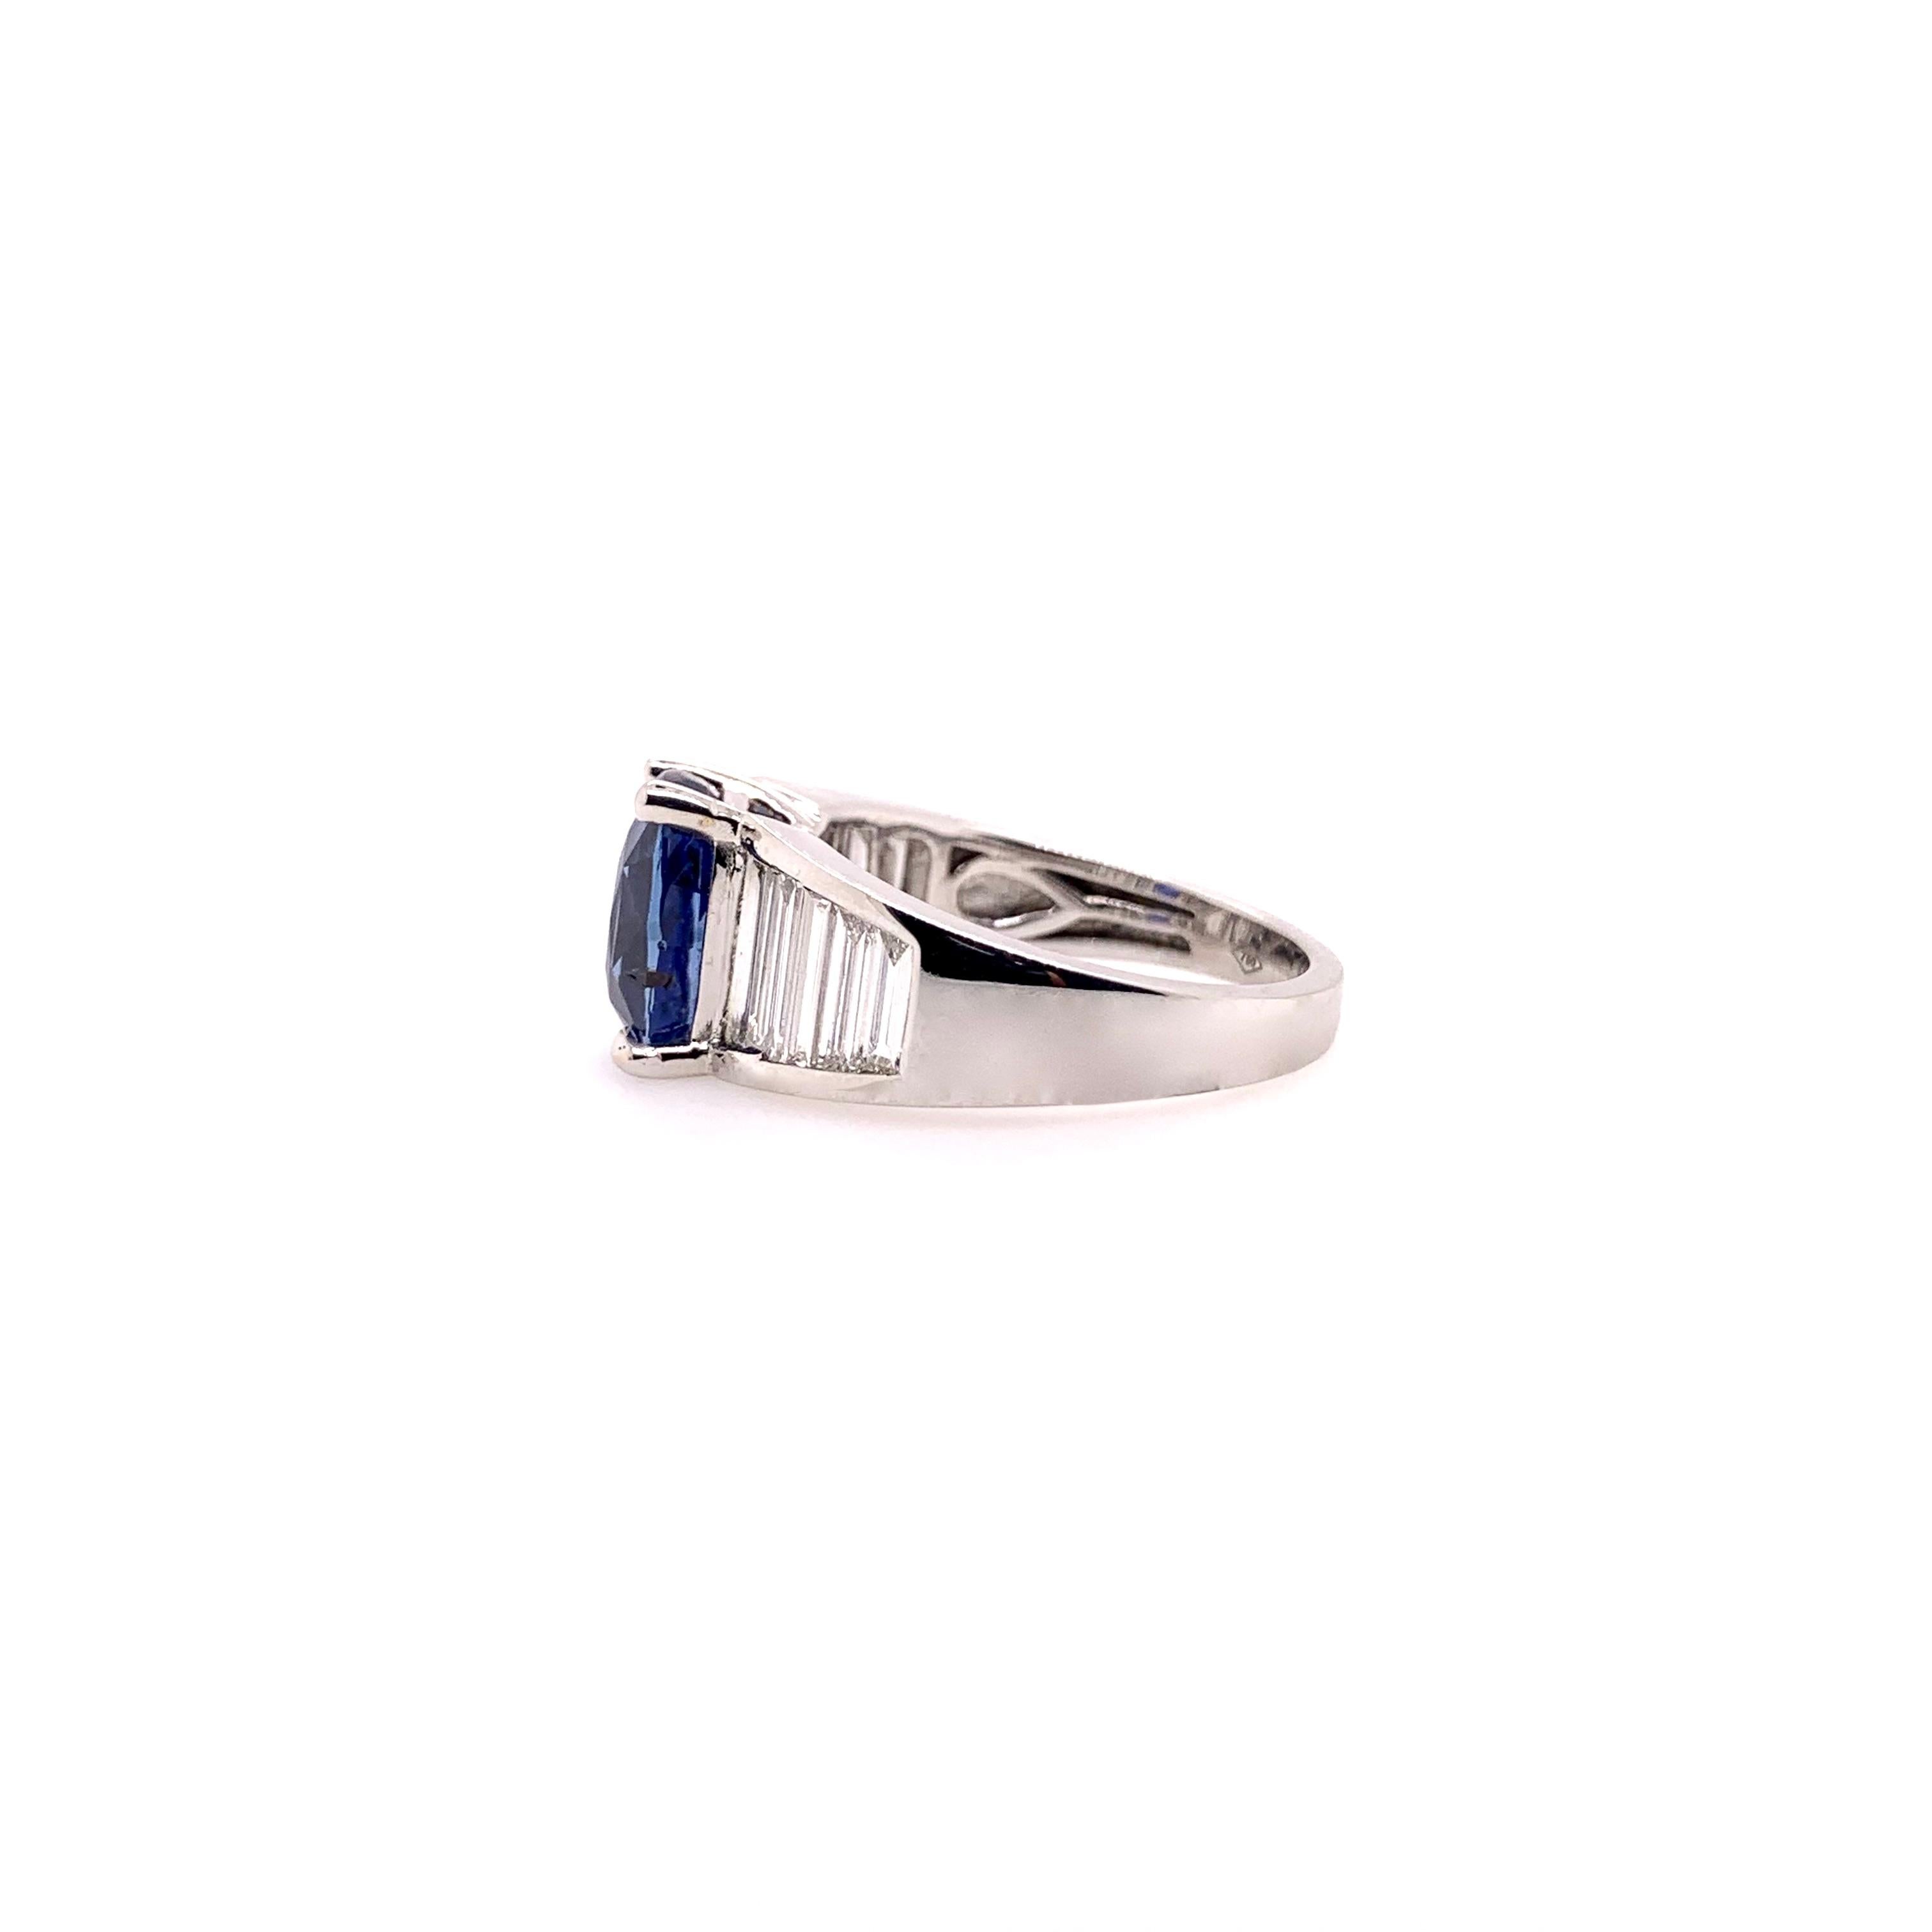 Ein seltener unerhitzter, GIA-zertifizierter blauer Saphirring in einer klassischen, länglichen Baguette-Diamantenfassung aus 18 Karat Weißgold.  Der königsblaue Saphir von 4,06 ct. zieht die Aufmerksamkeit auf sich und wird von den Diamantbaguetten